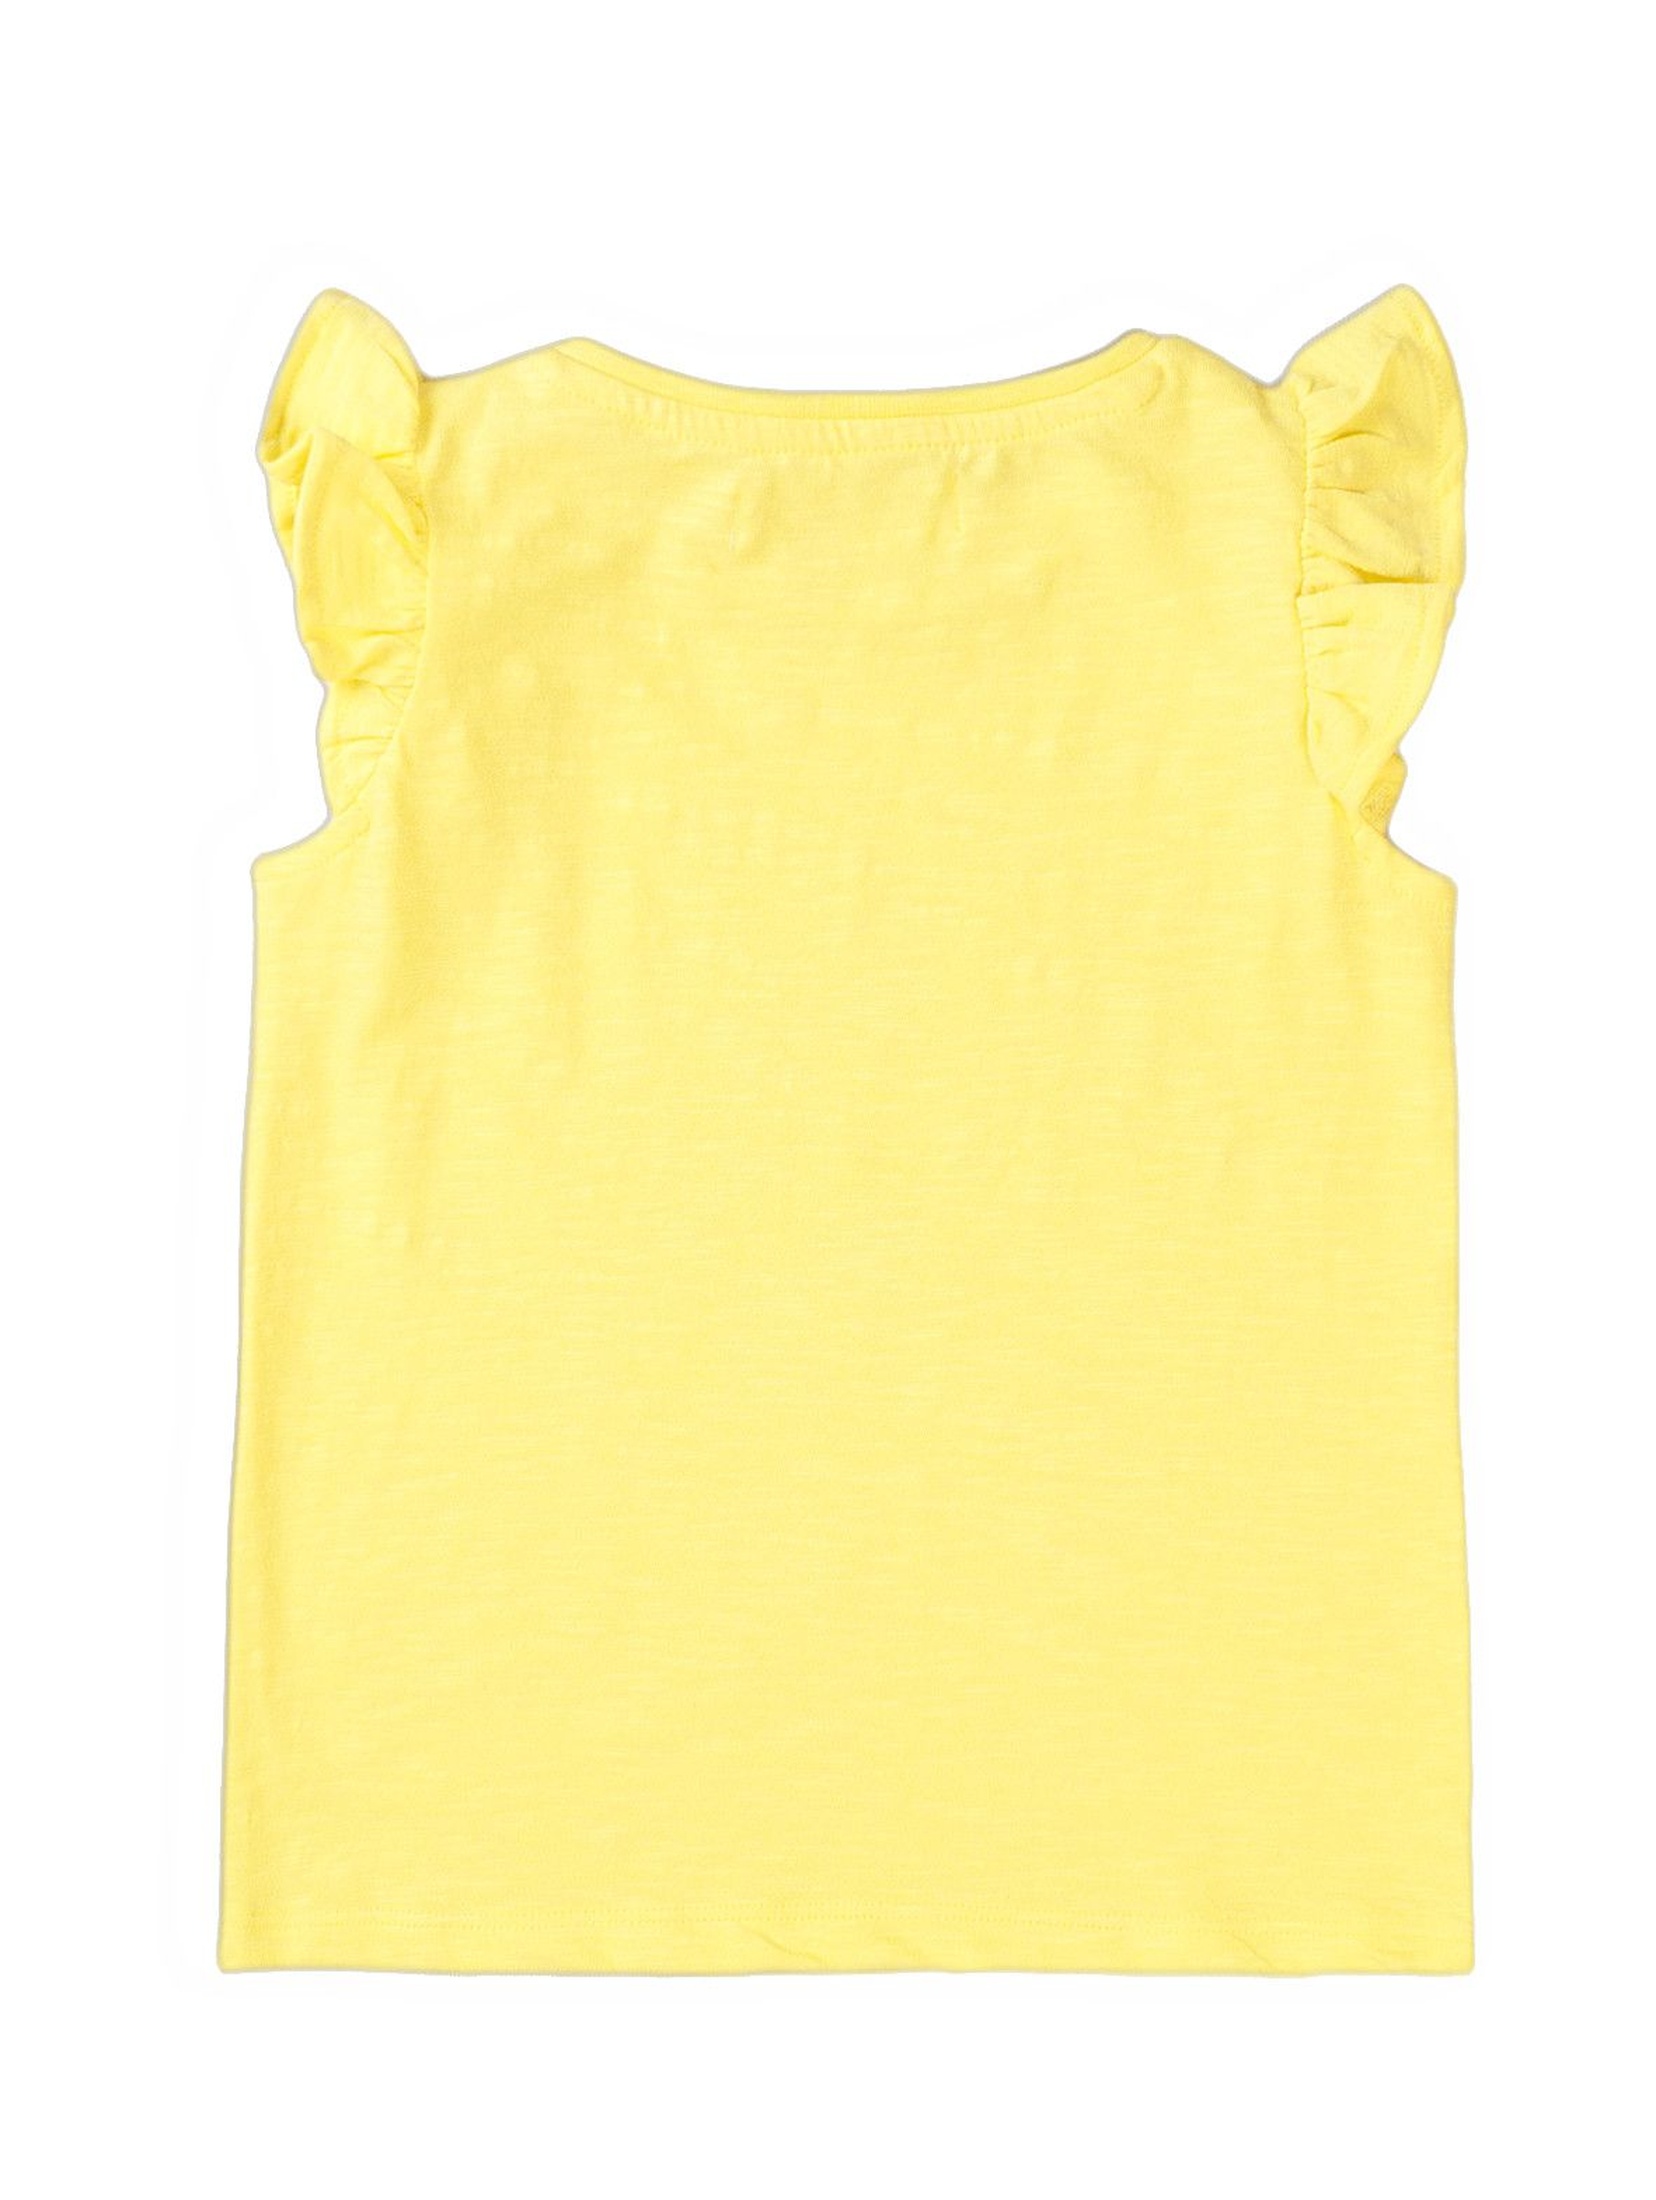 Bawełniana bluzka dziewczęca żółta